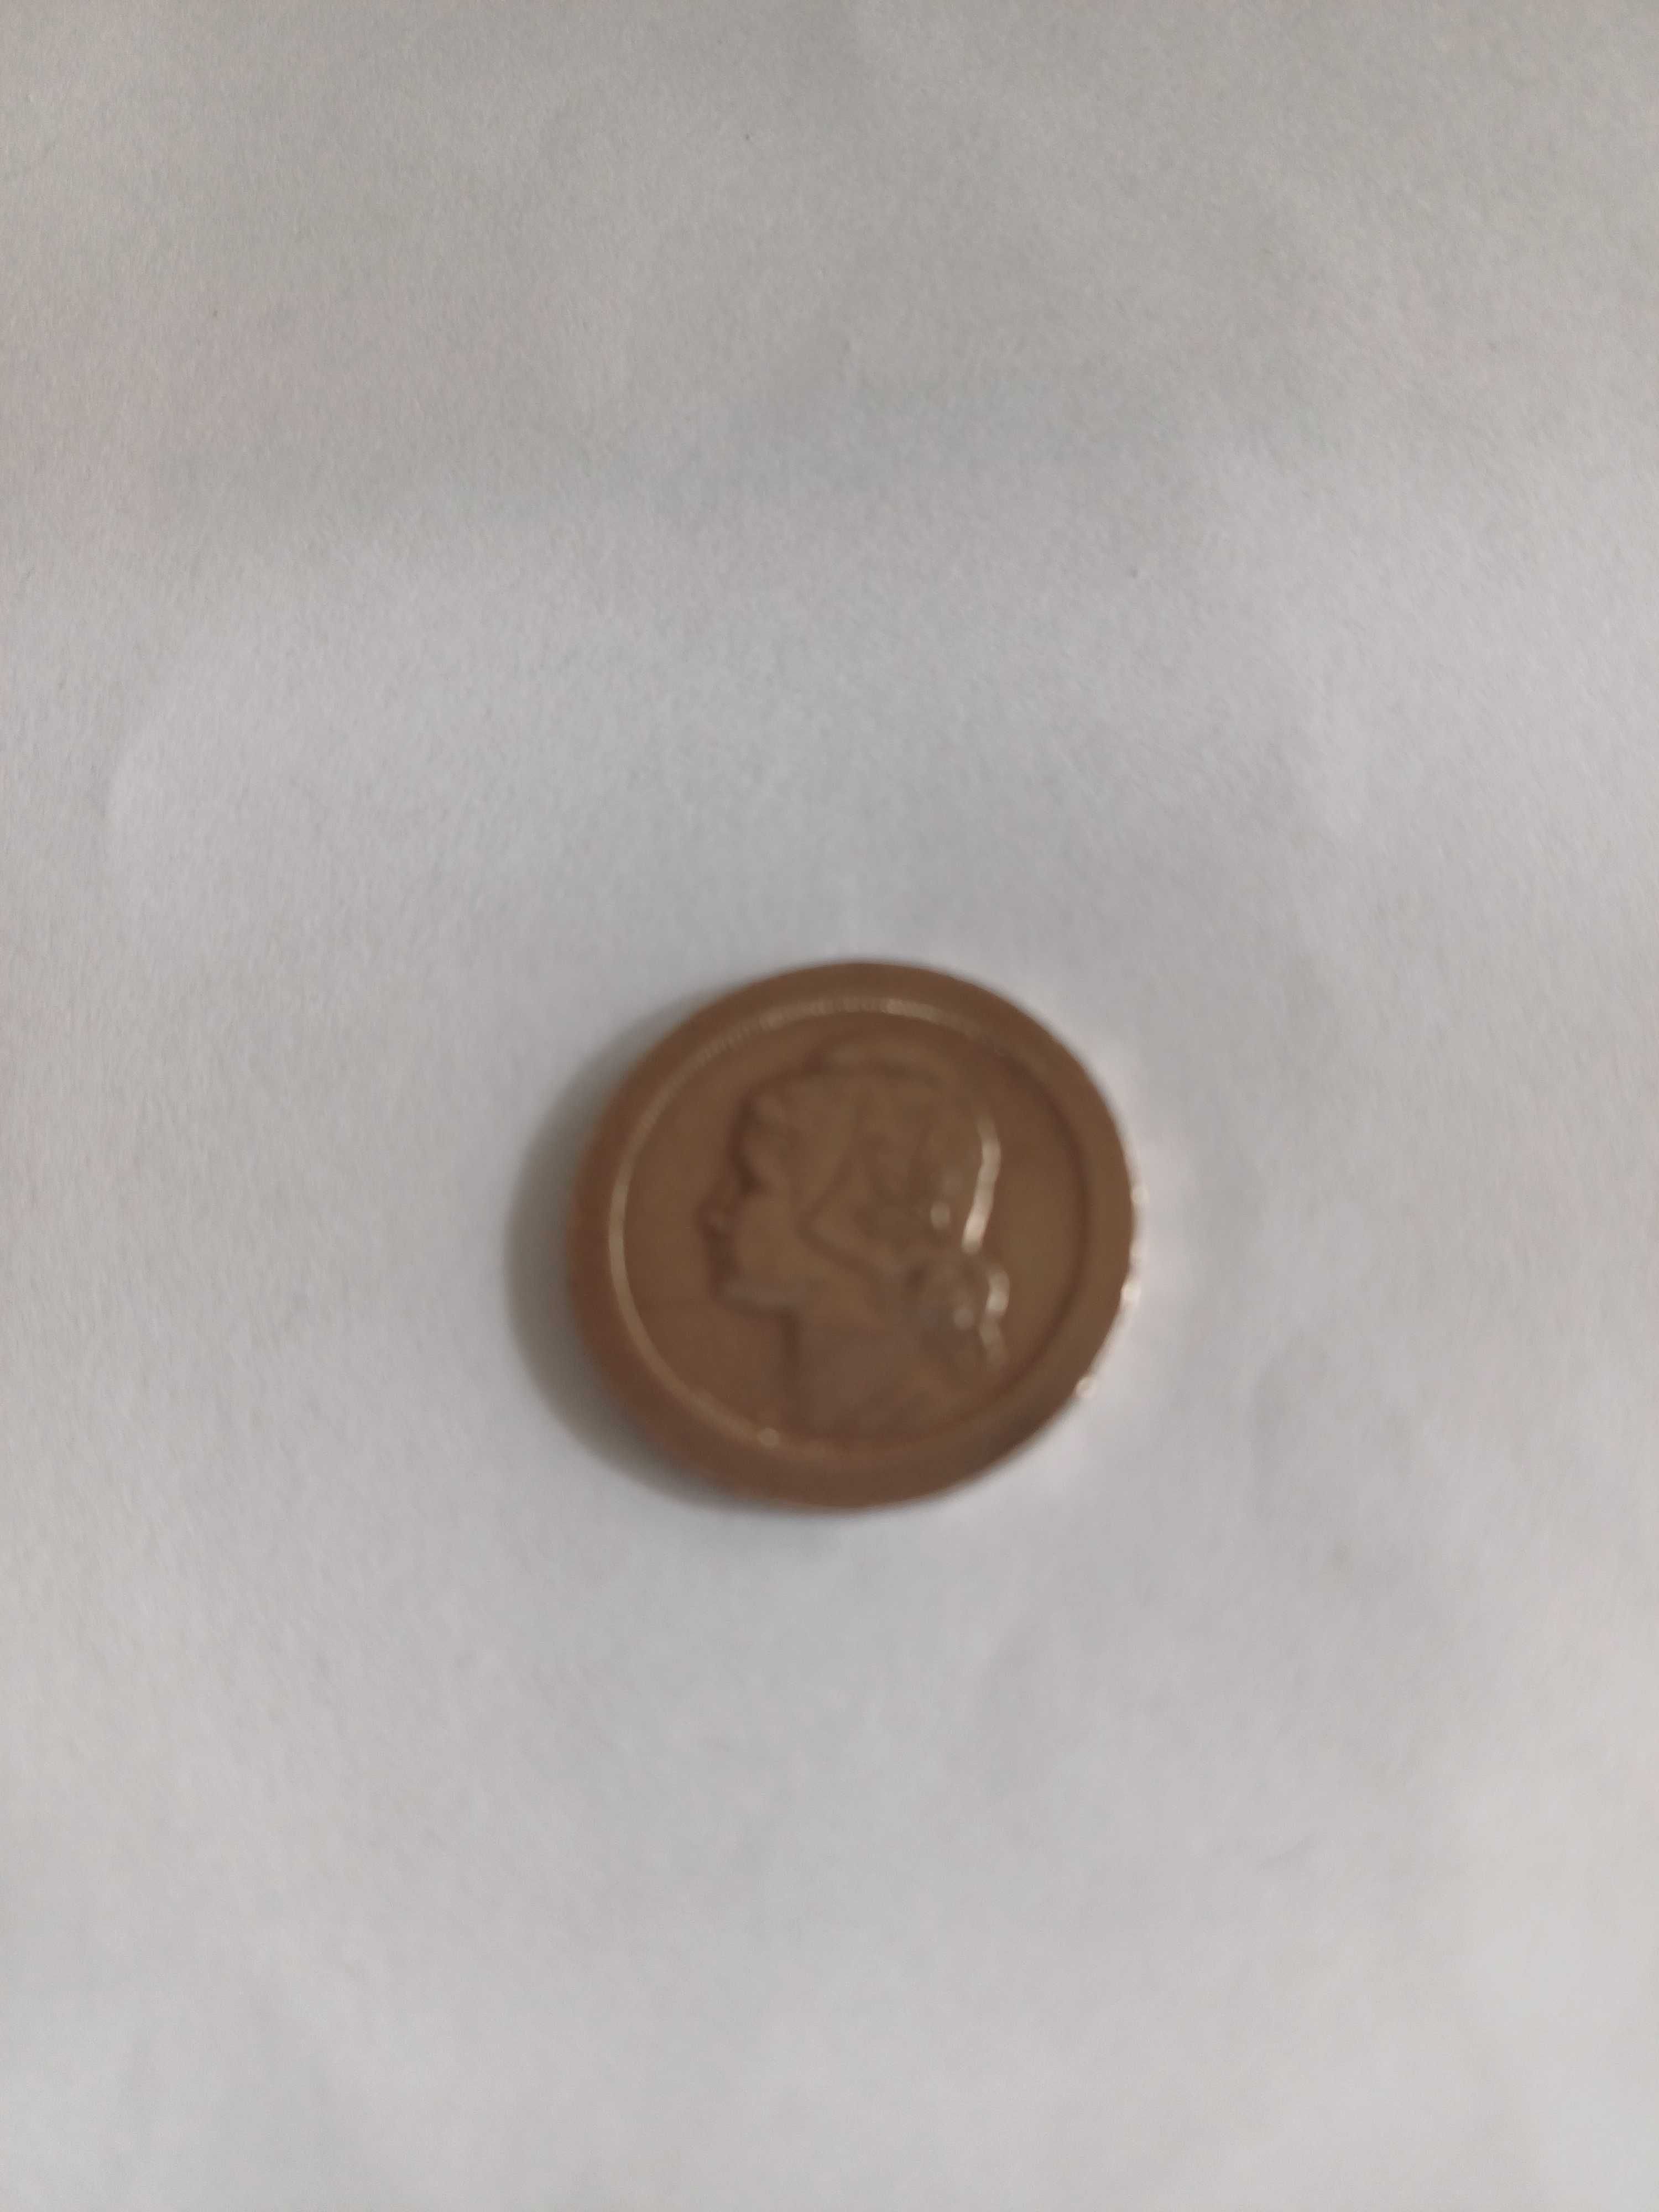 10 CENTAVOS de 1920 e 1921 2 moedas em Cupro-Niquel da 1ª REPÚBLICA